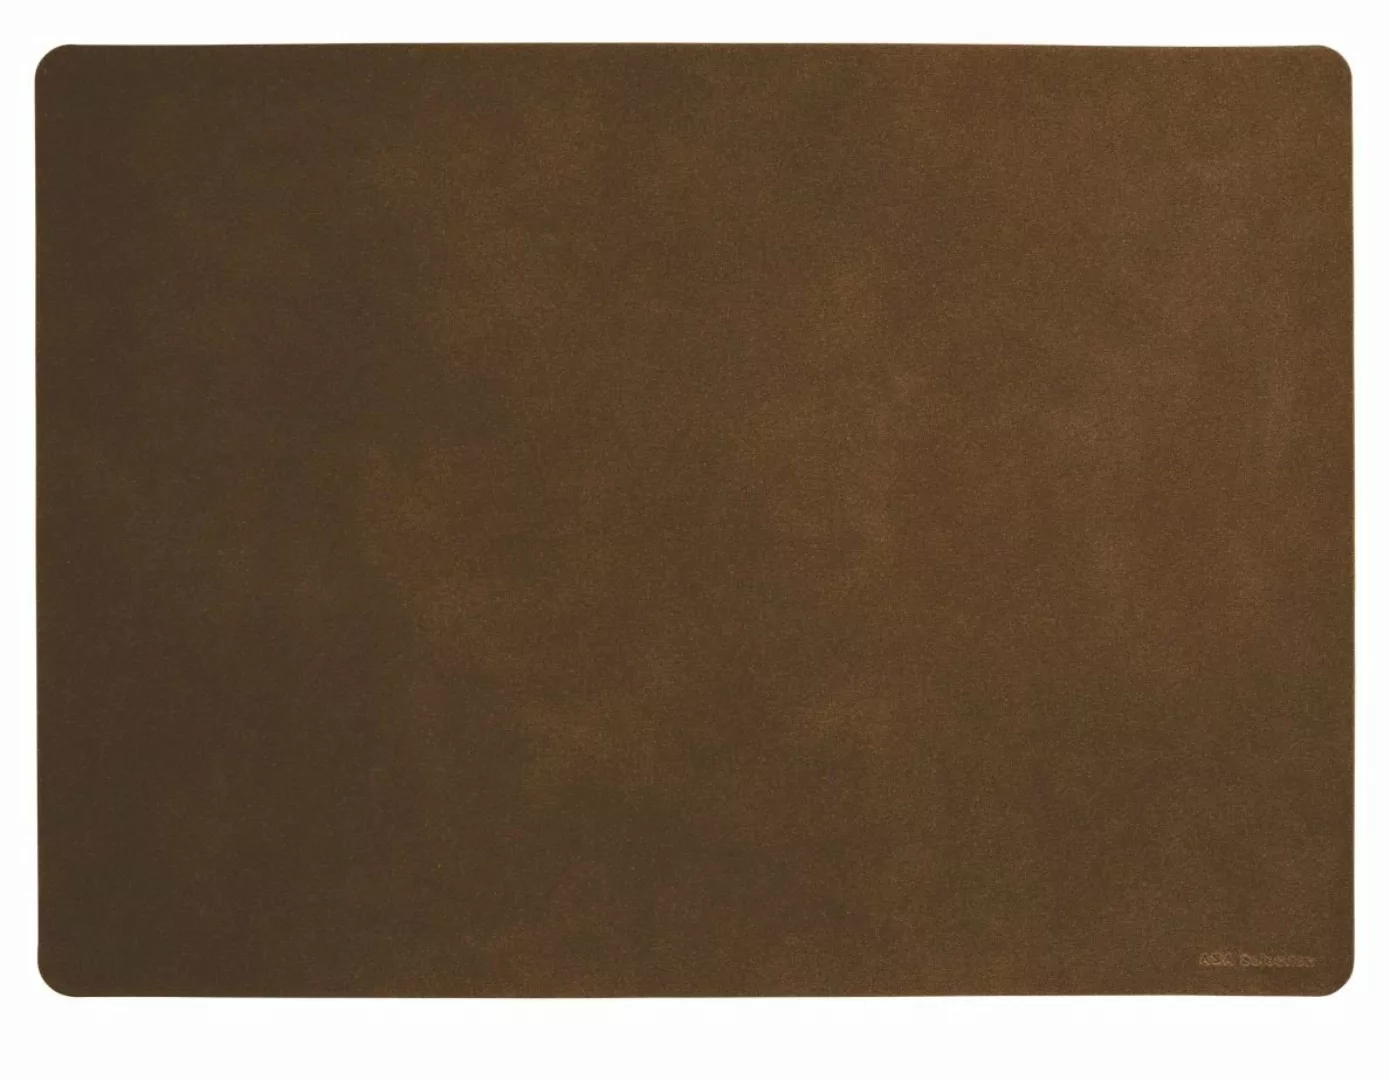 ASA Tischsets Tischset soft leather dark sepia 46 x 33 cm (braun) günstig online kaufen